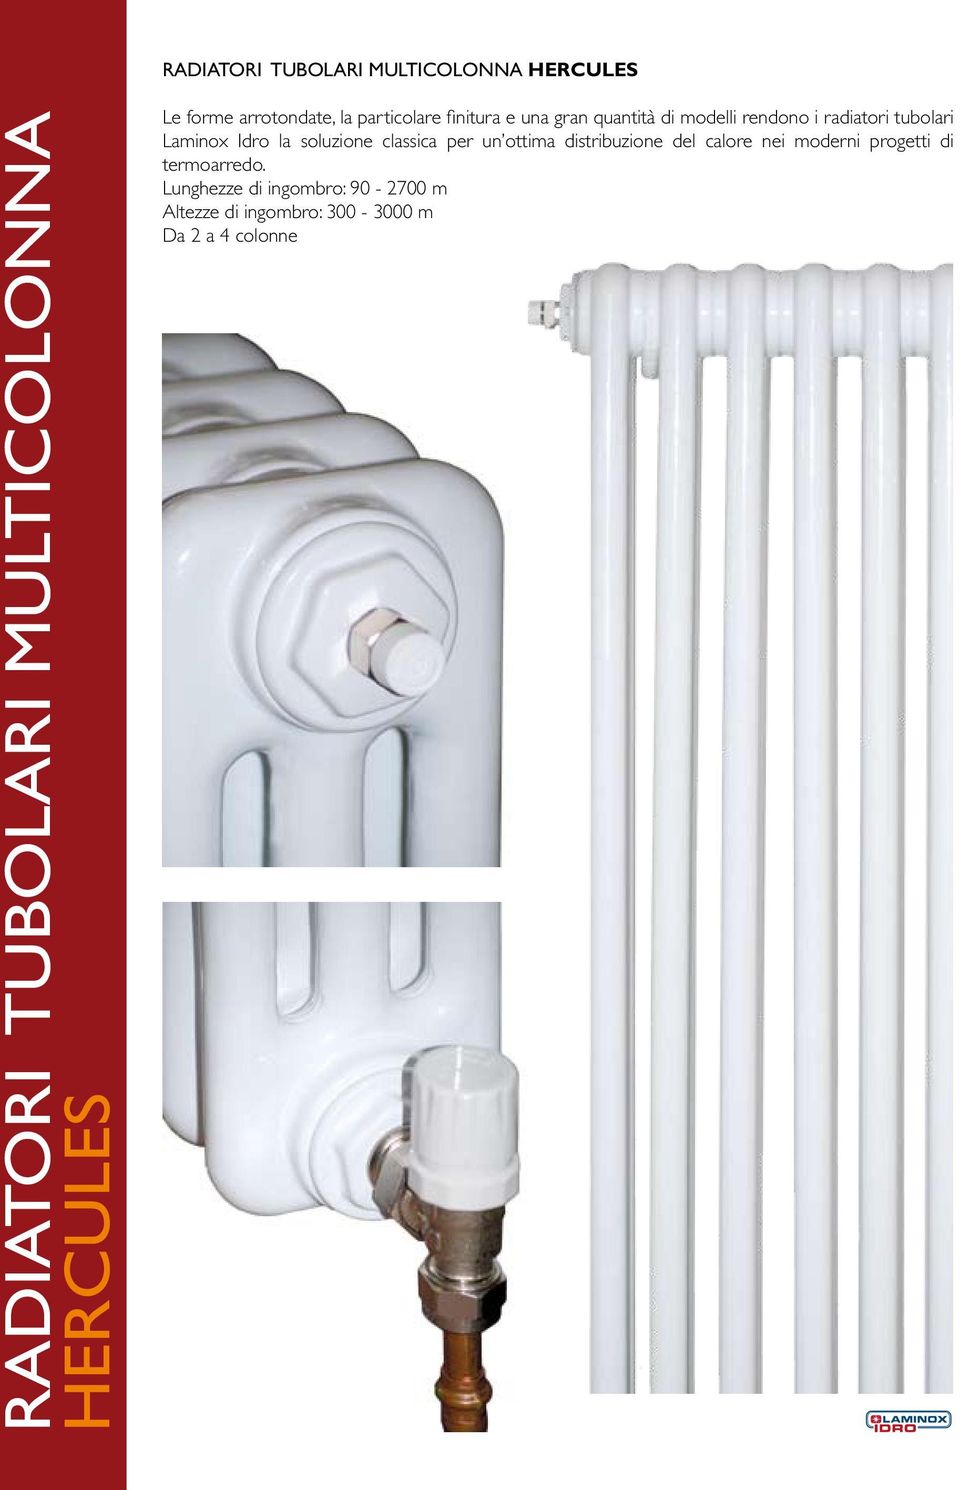 tubolari Laminox Idro la soluzione classica per un ottima distribuzione del calore nei moderni